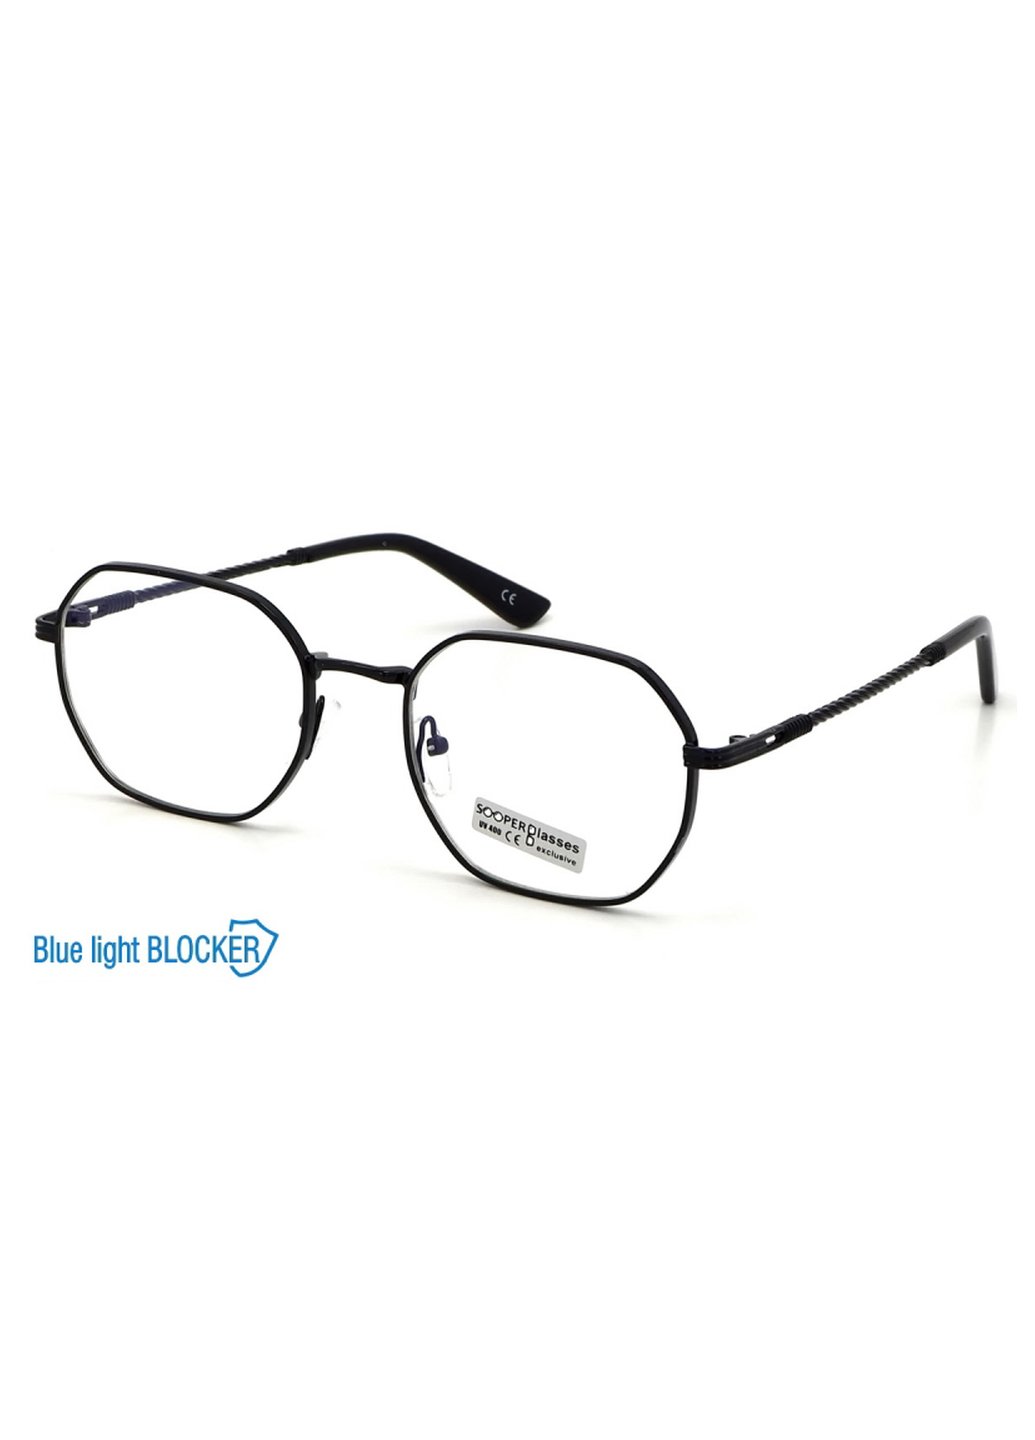 Купить Очки для работы за компьютером Cooper Glasses в черной оправе 124009 в интернет-магазине